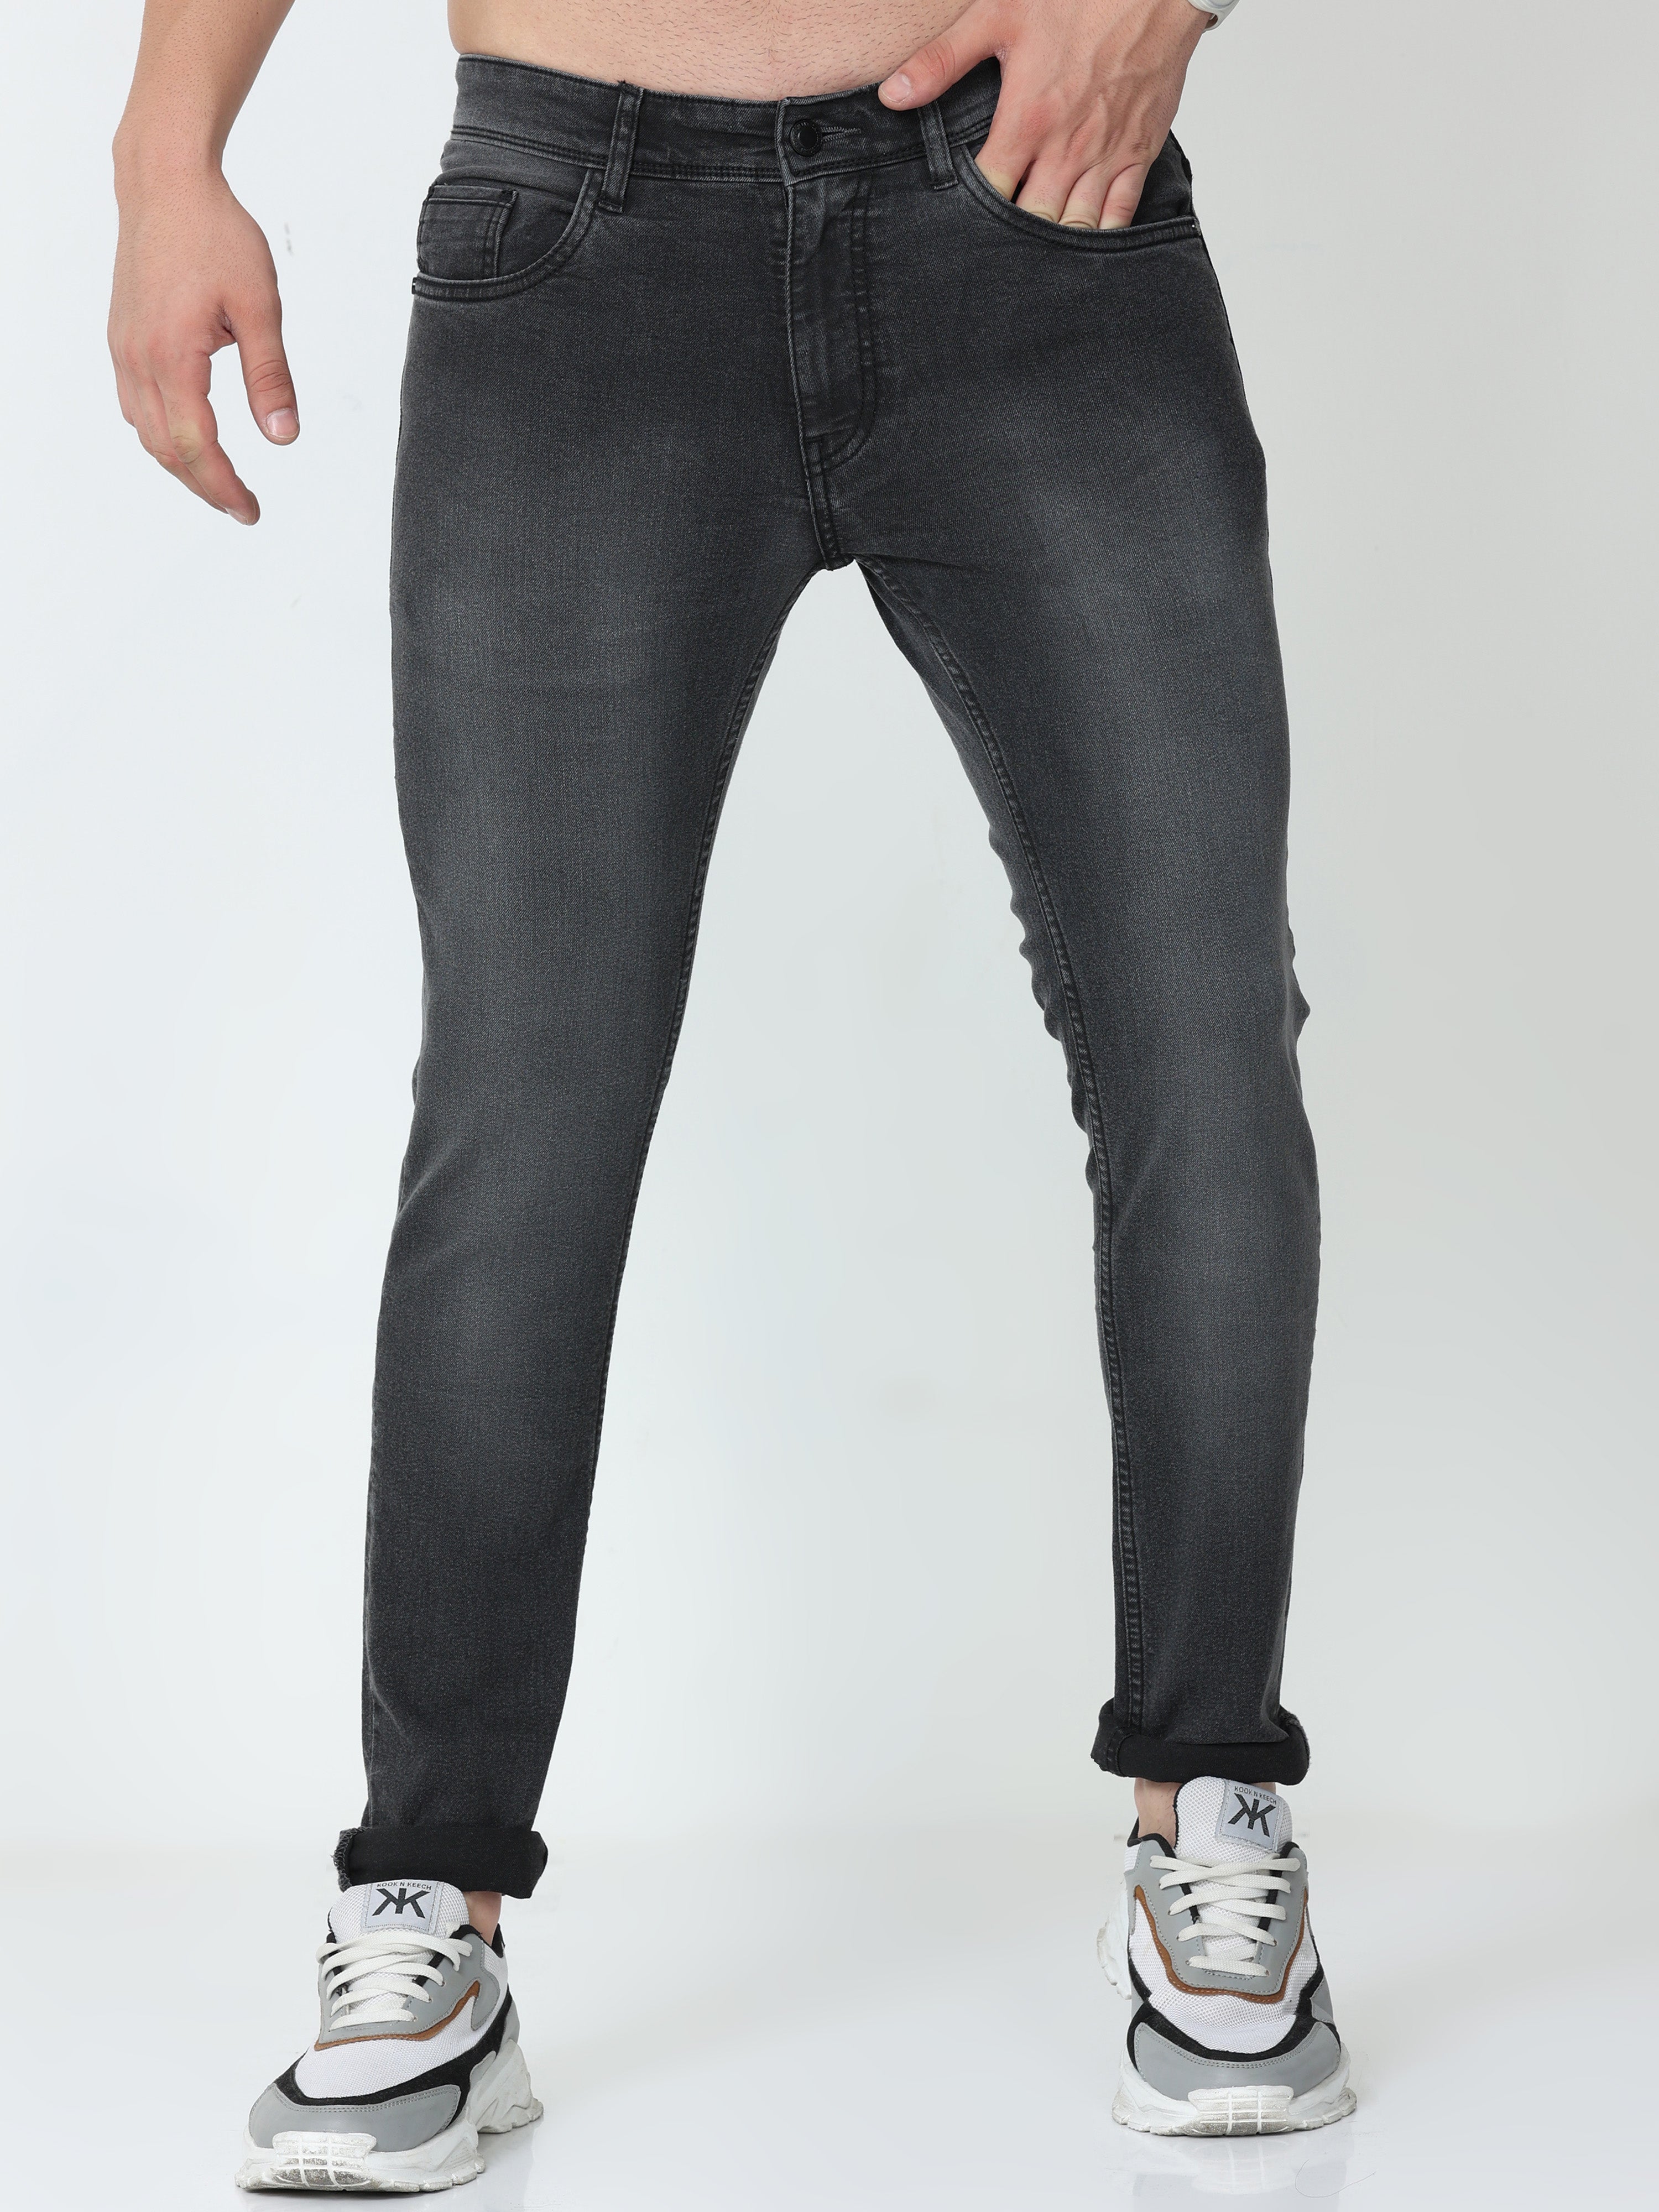 Carbon Grey Men Skinny Fit Jeans